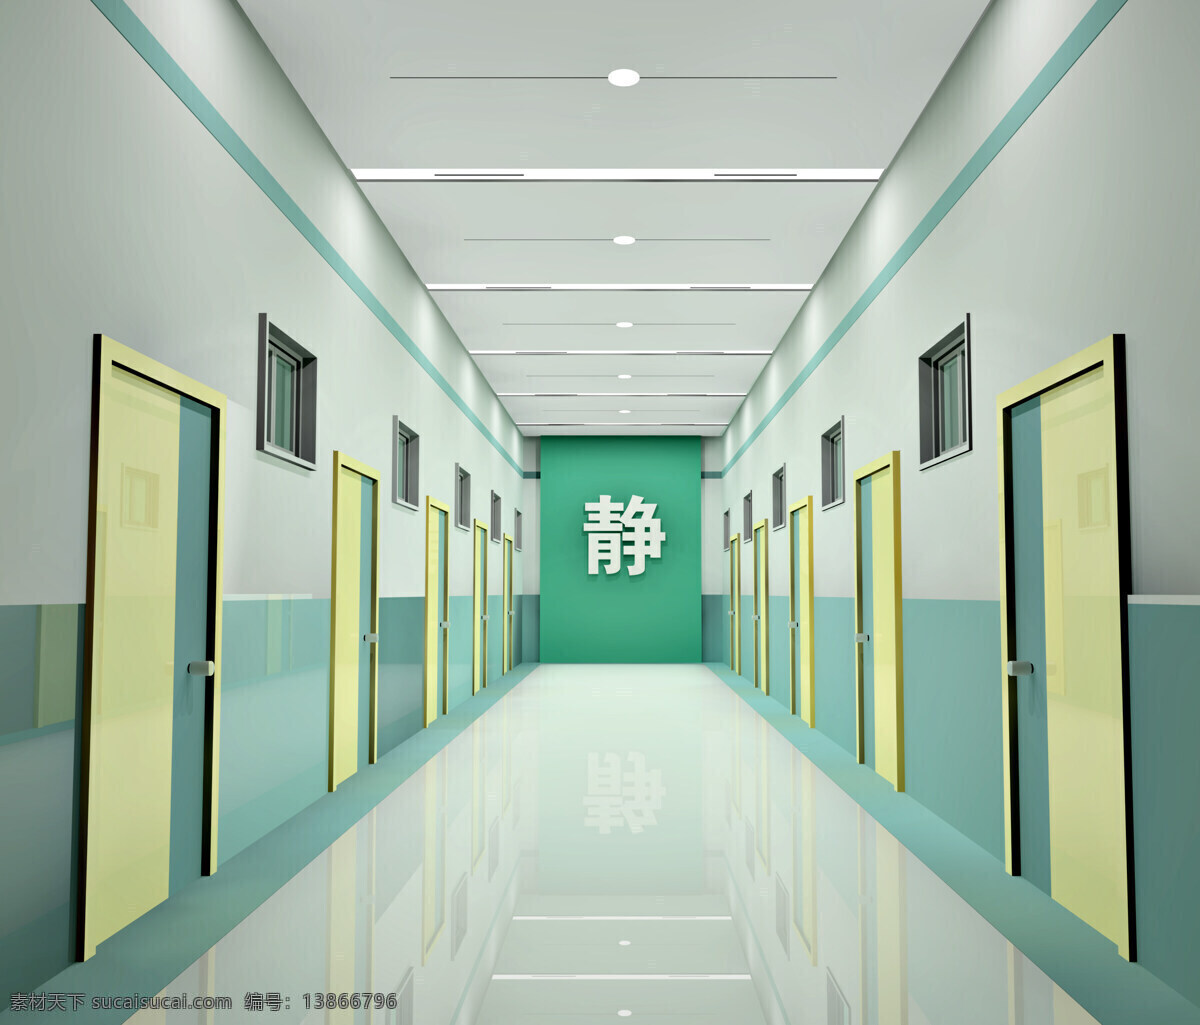 地板 环境设计 门 室内设计 效果图 天花板 医院 走廊 设计素材 模板下载 医院走廊 psd源文件